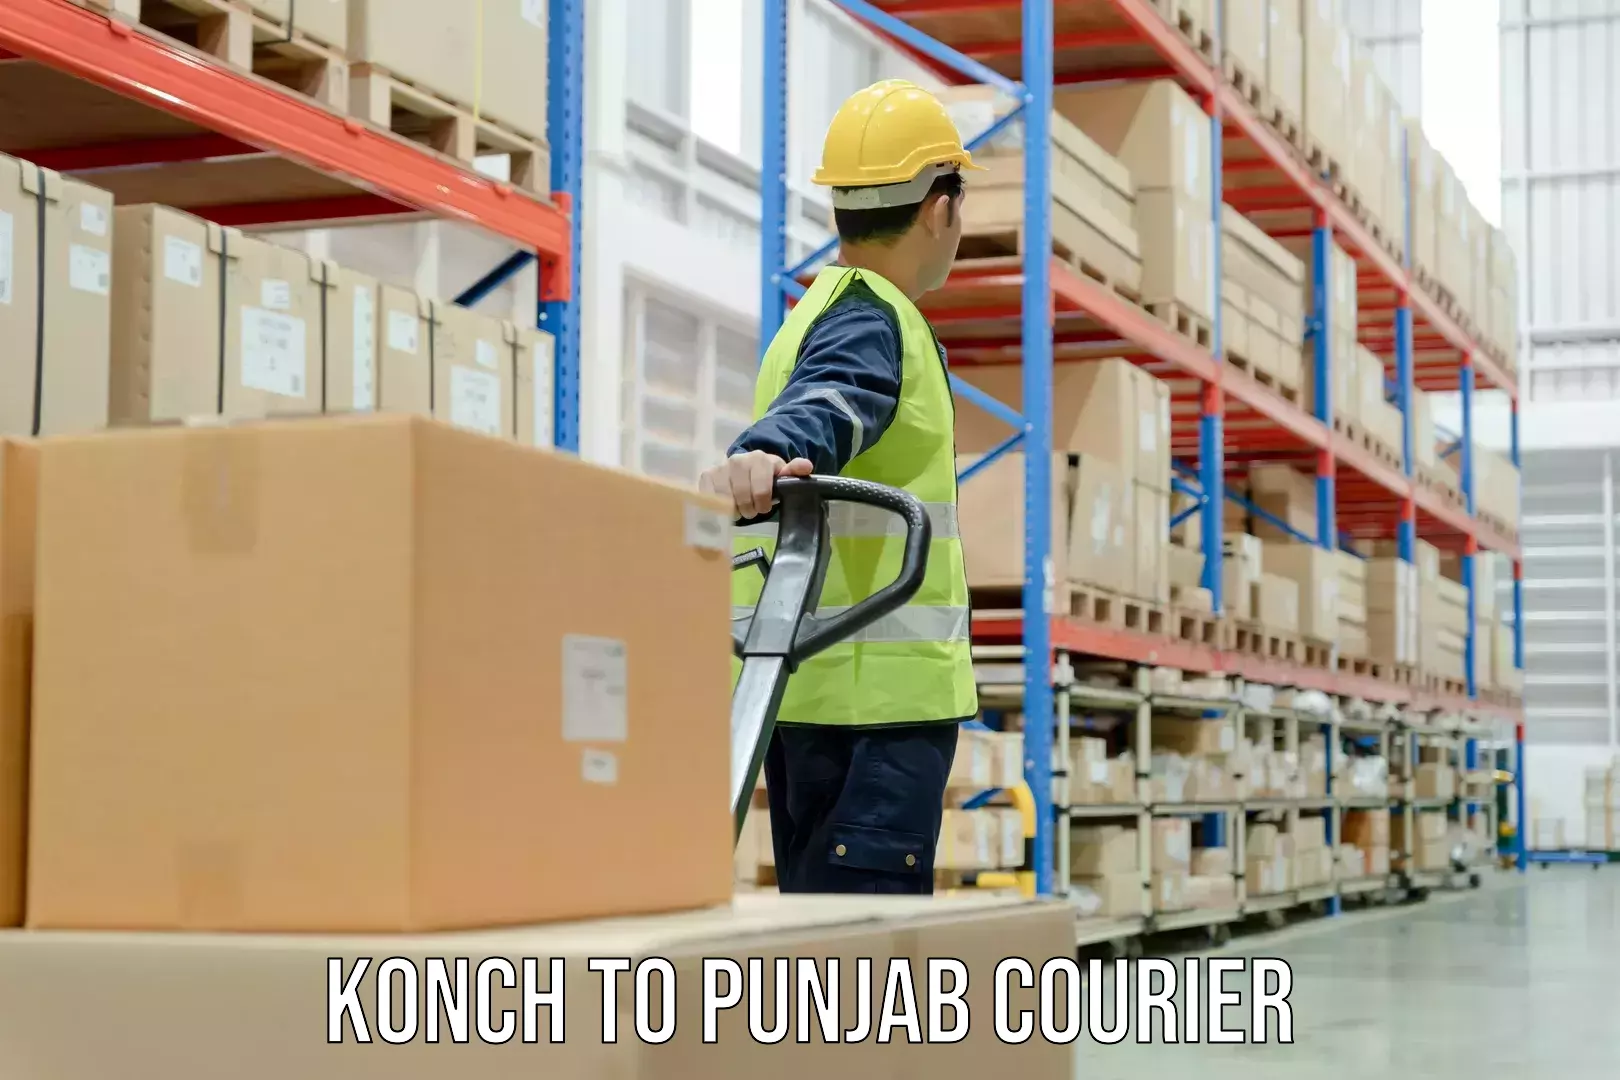 Regular parcel service Konch to Punjab